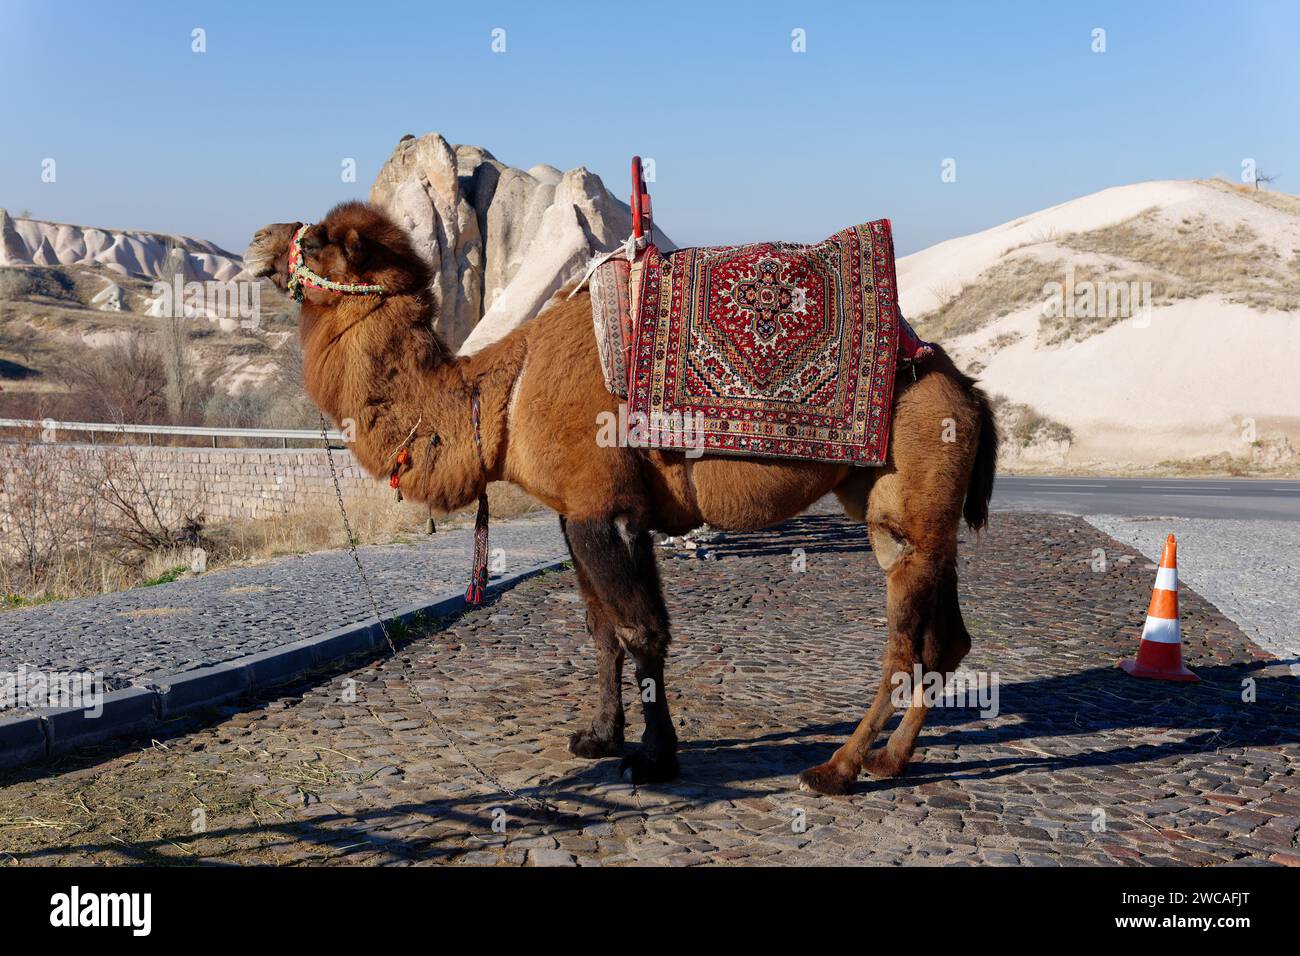 Un chameau sur le bord de la route en Cappadoce, Turquie. Camel Riding, l'une des nombreuses expériences en Cappadoce Banque D'Images